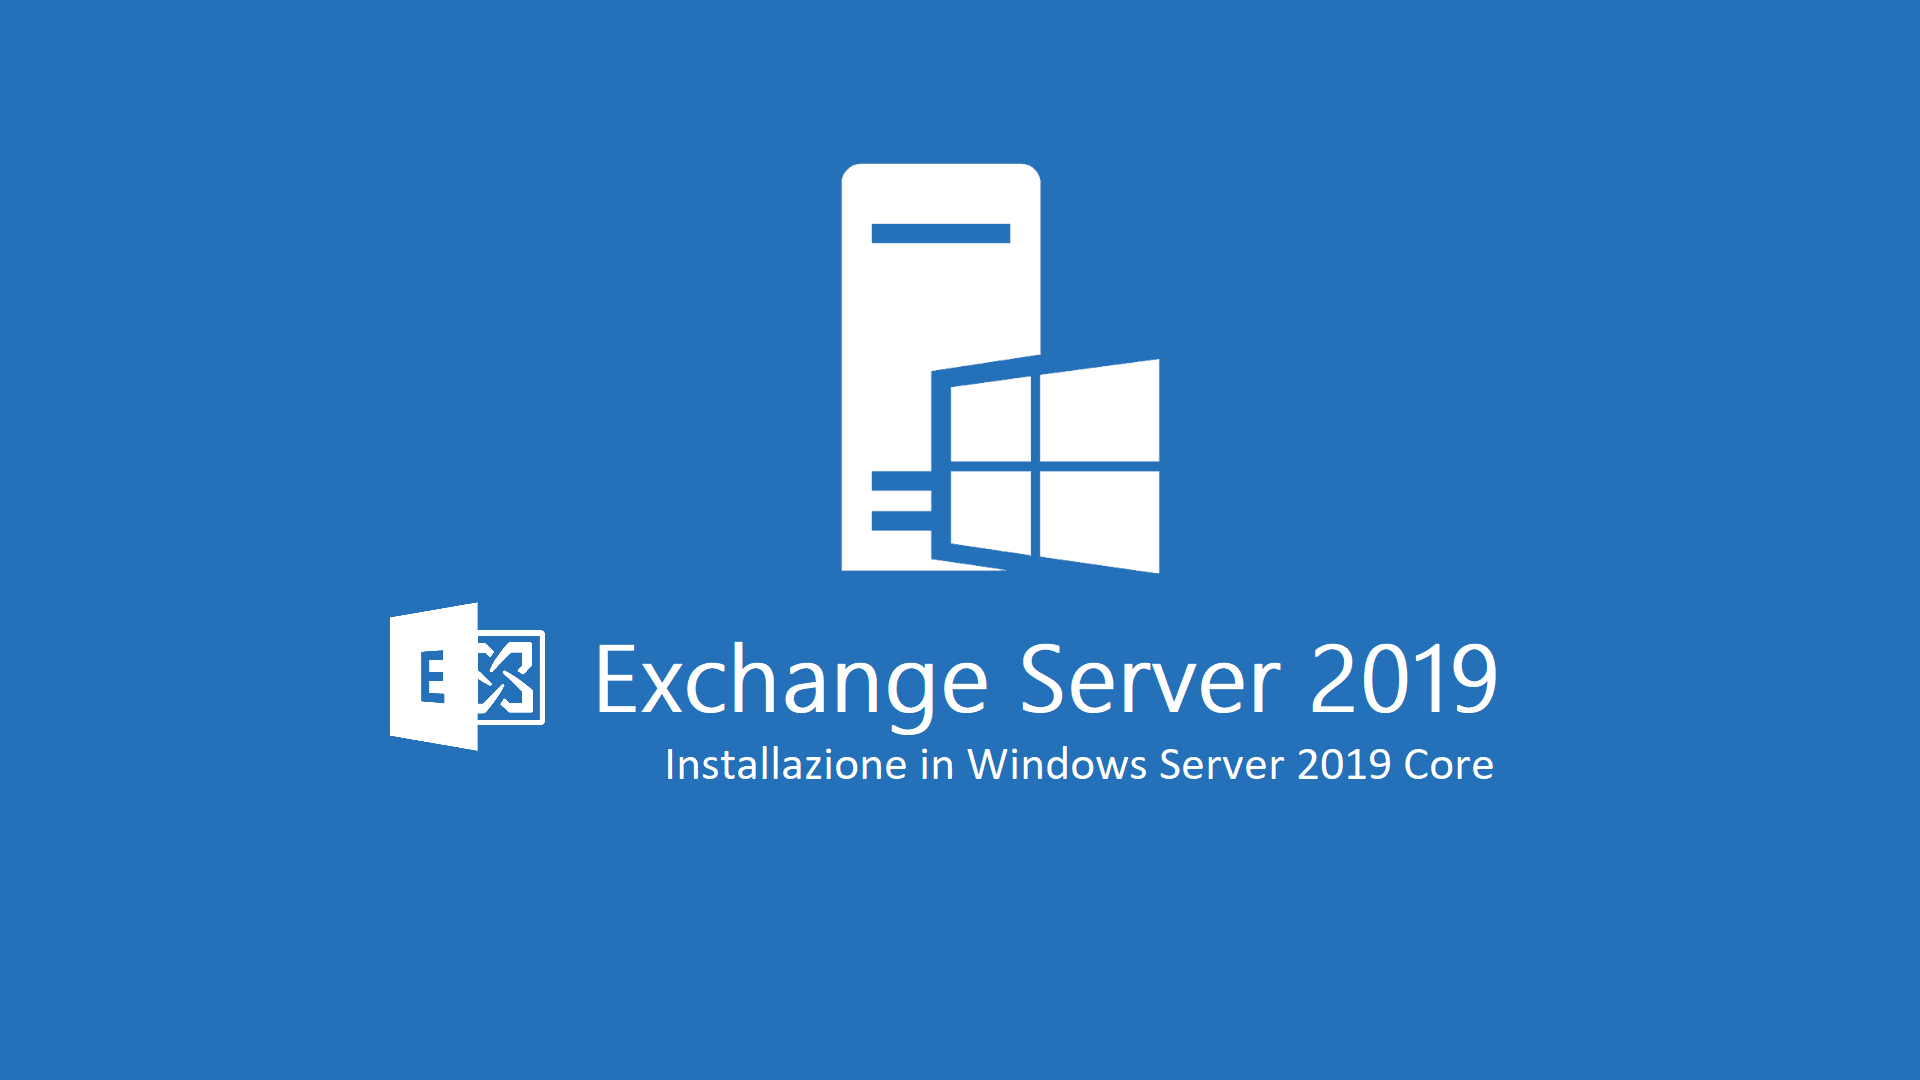 Exchange 2019 Server Core